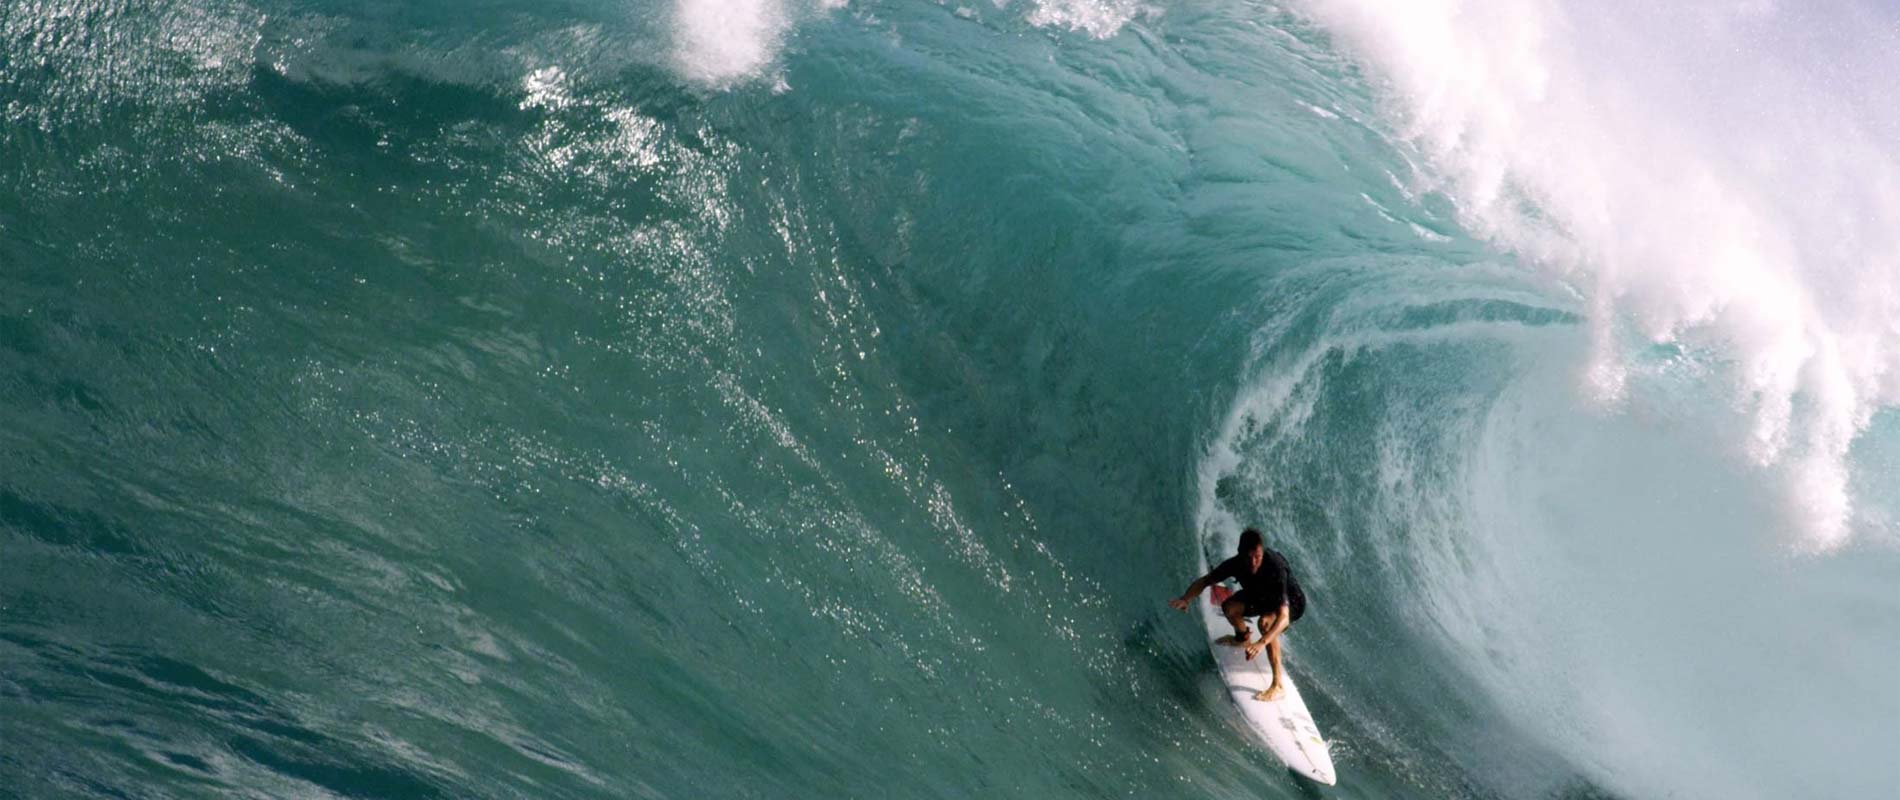 Grant Twiggy Baker - Big Wave Surfer